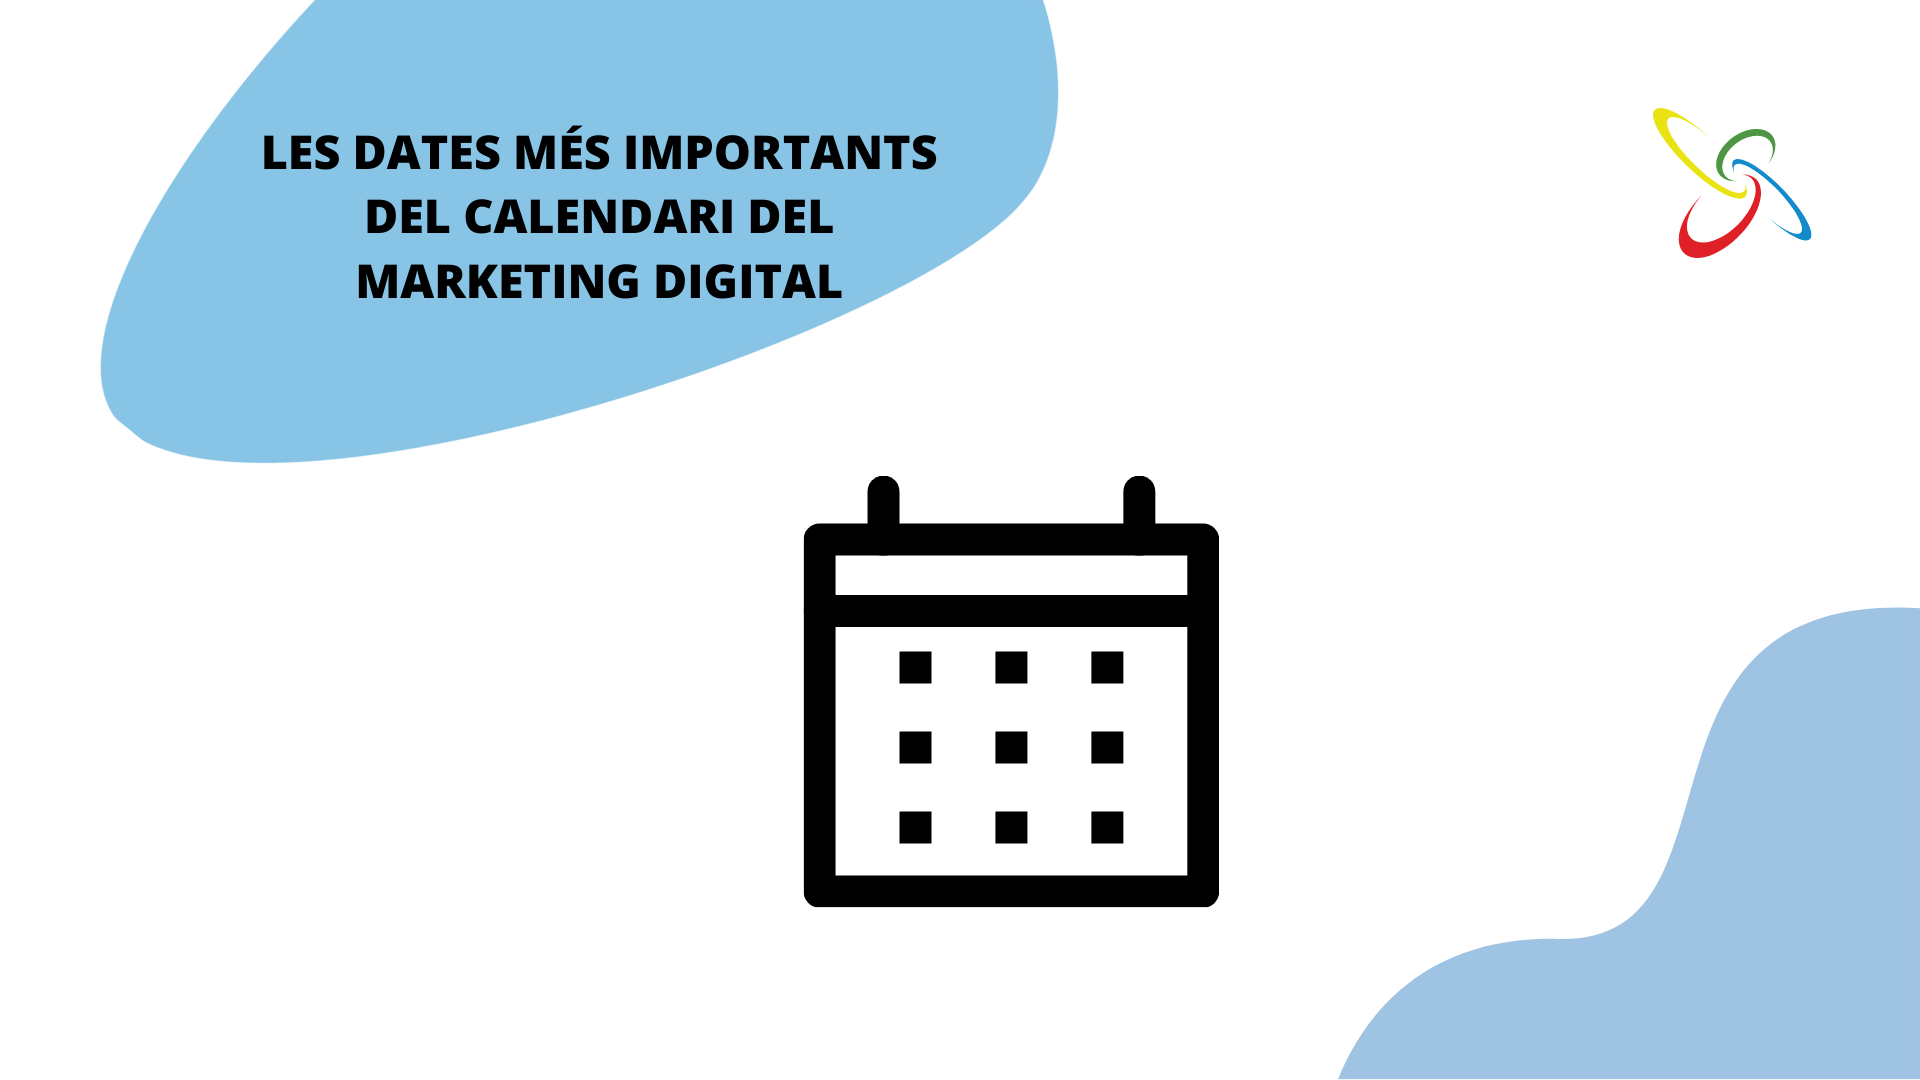 les dates més importants del calendari del marketing digital